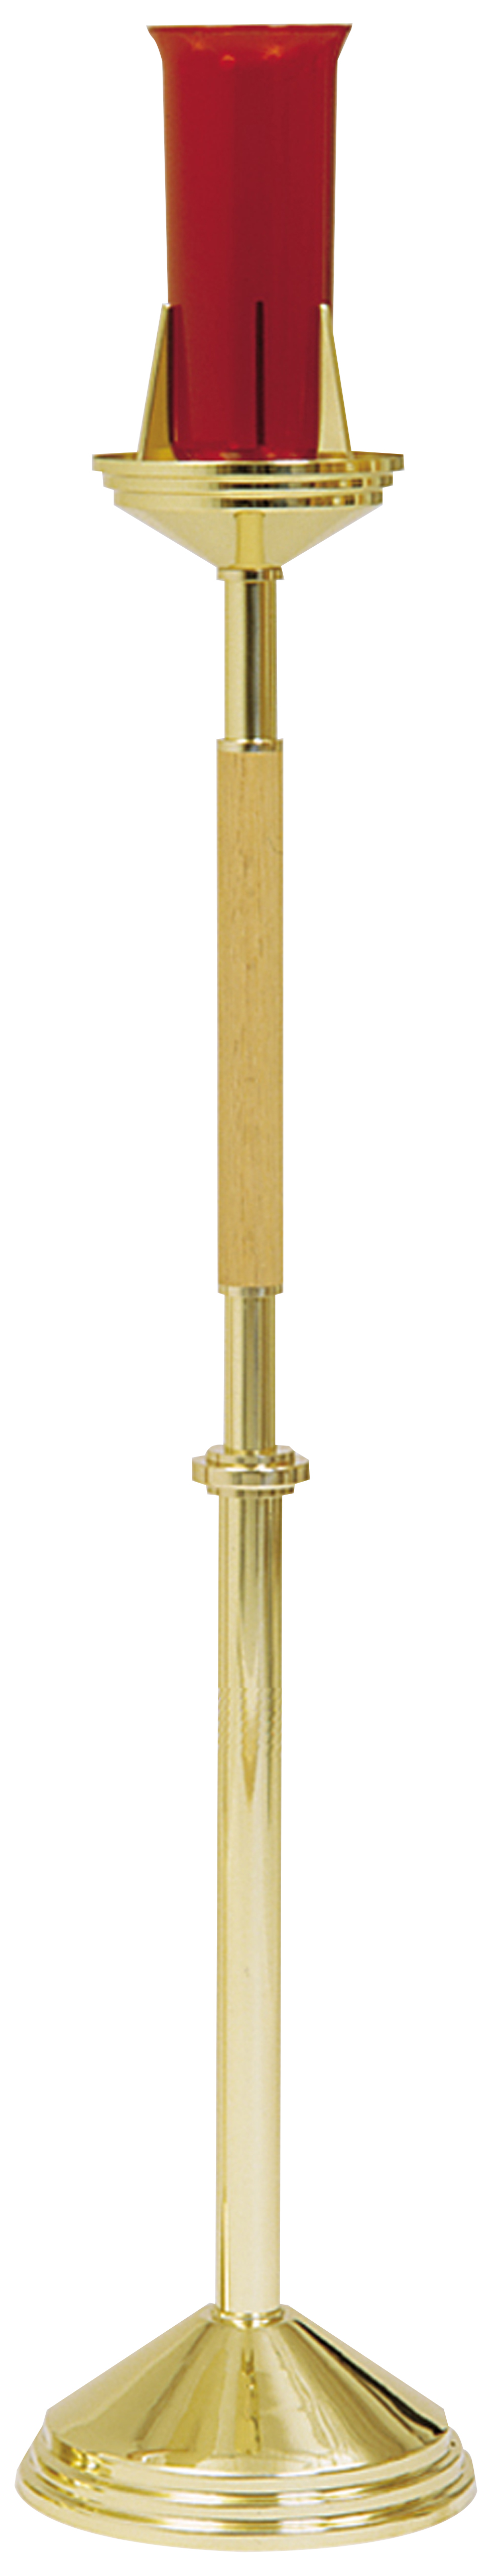 Floor Sanctuary Lamp Oak Brass 46 inch